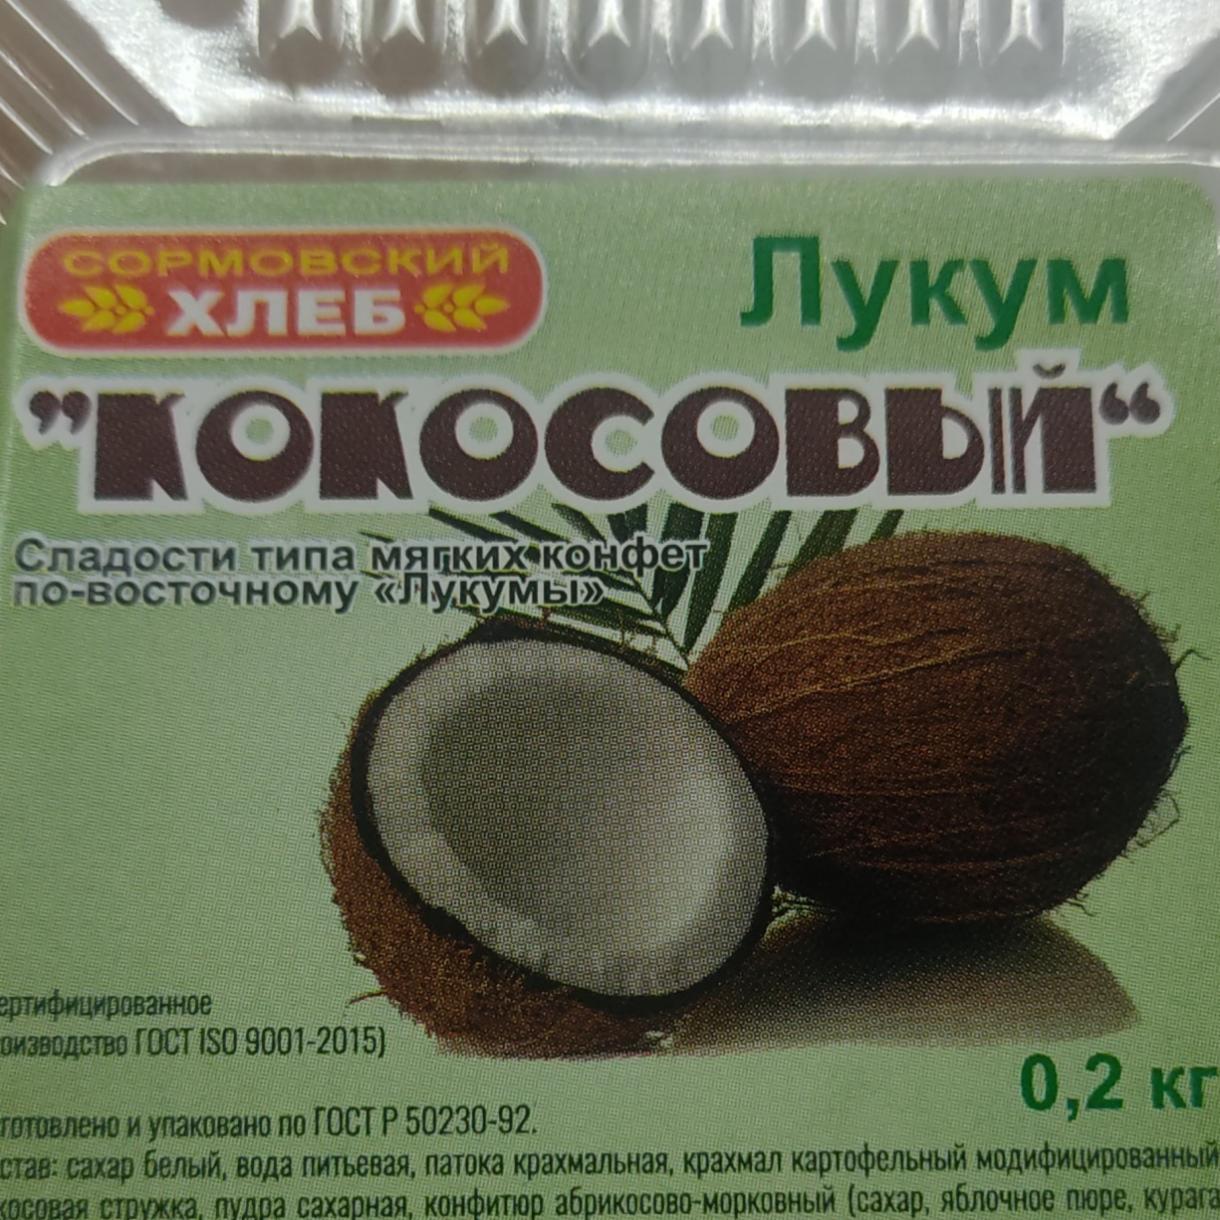 Фото - Лукум кокосовый Сормовский хлеб